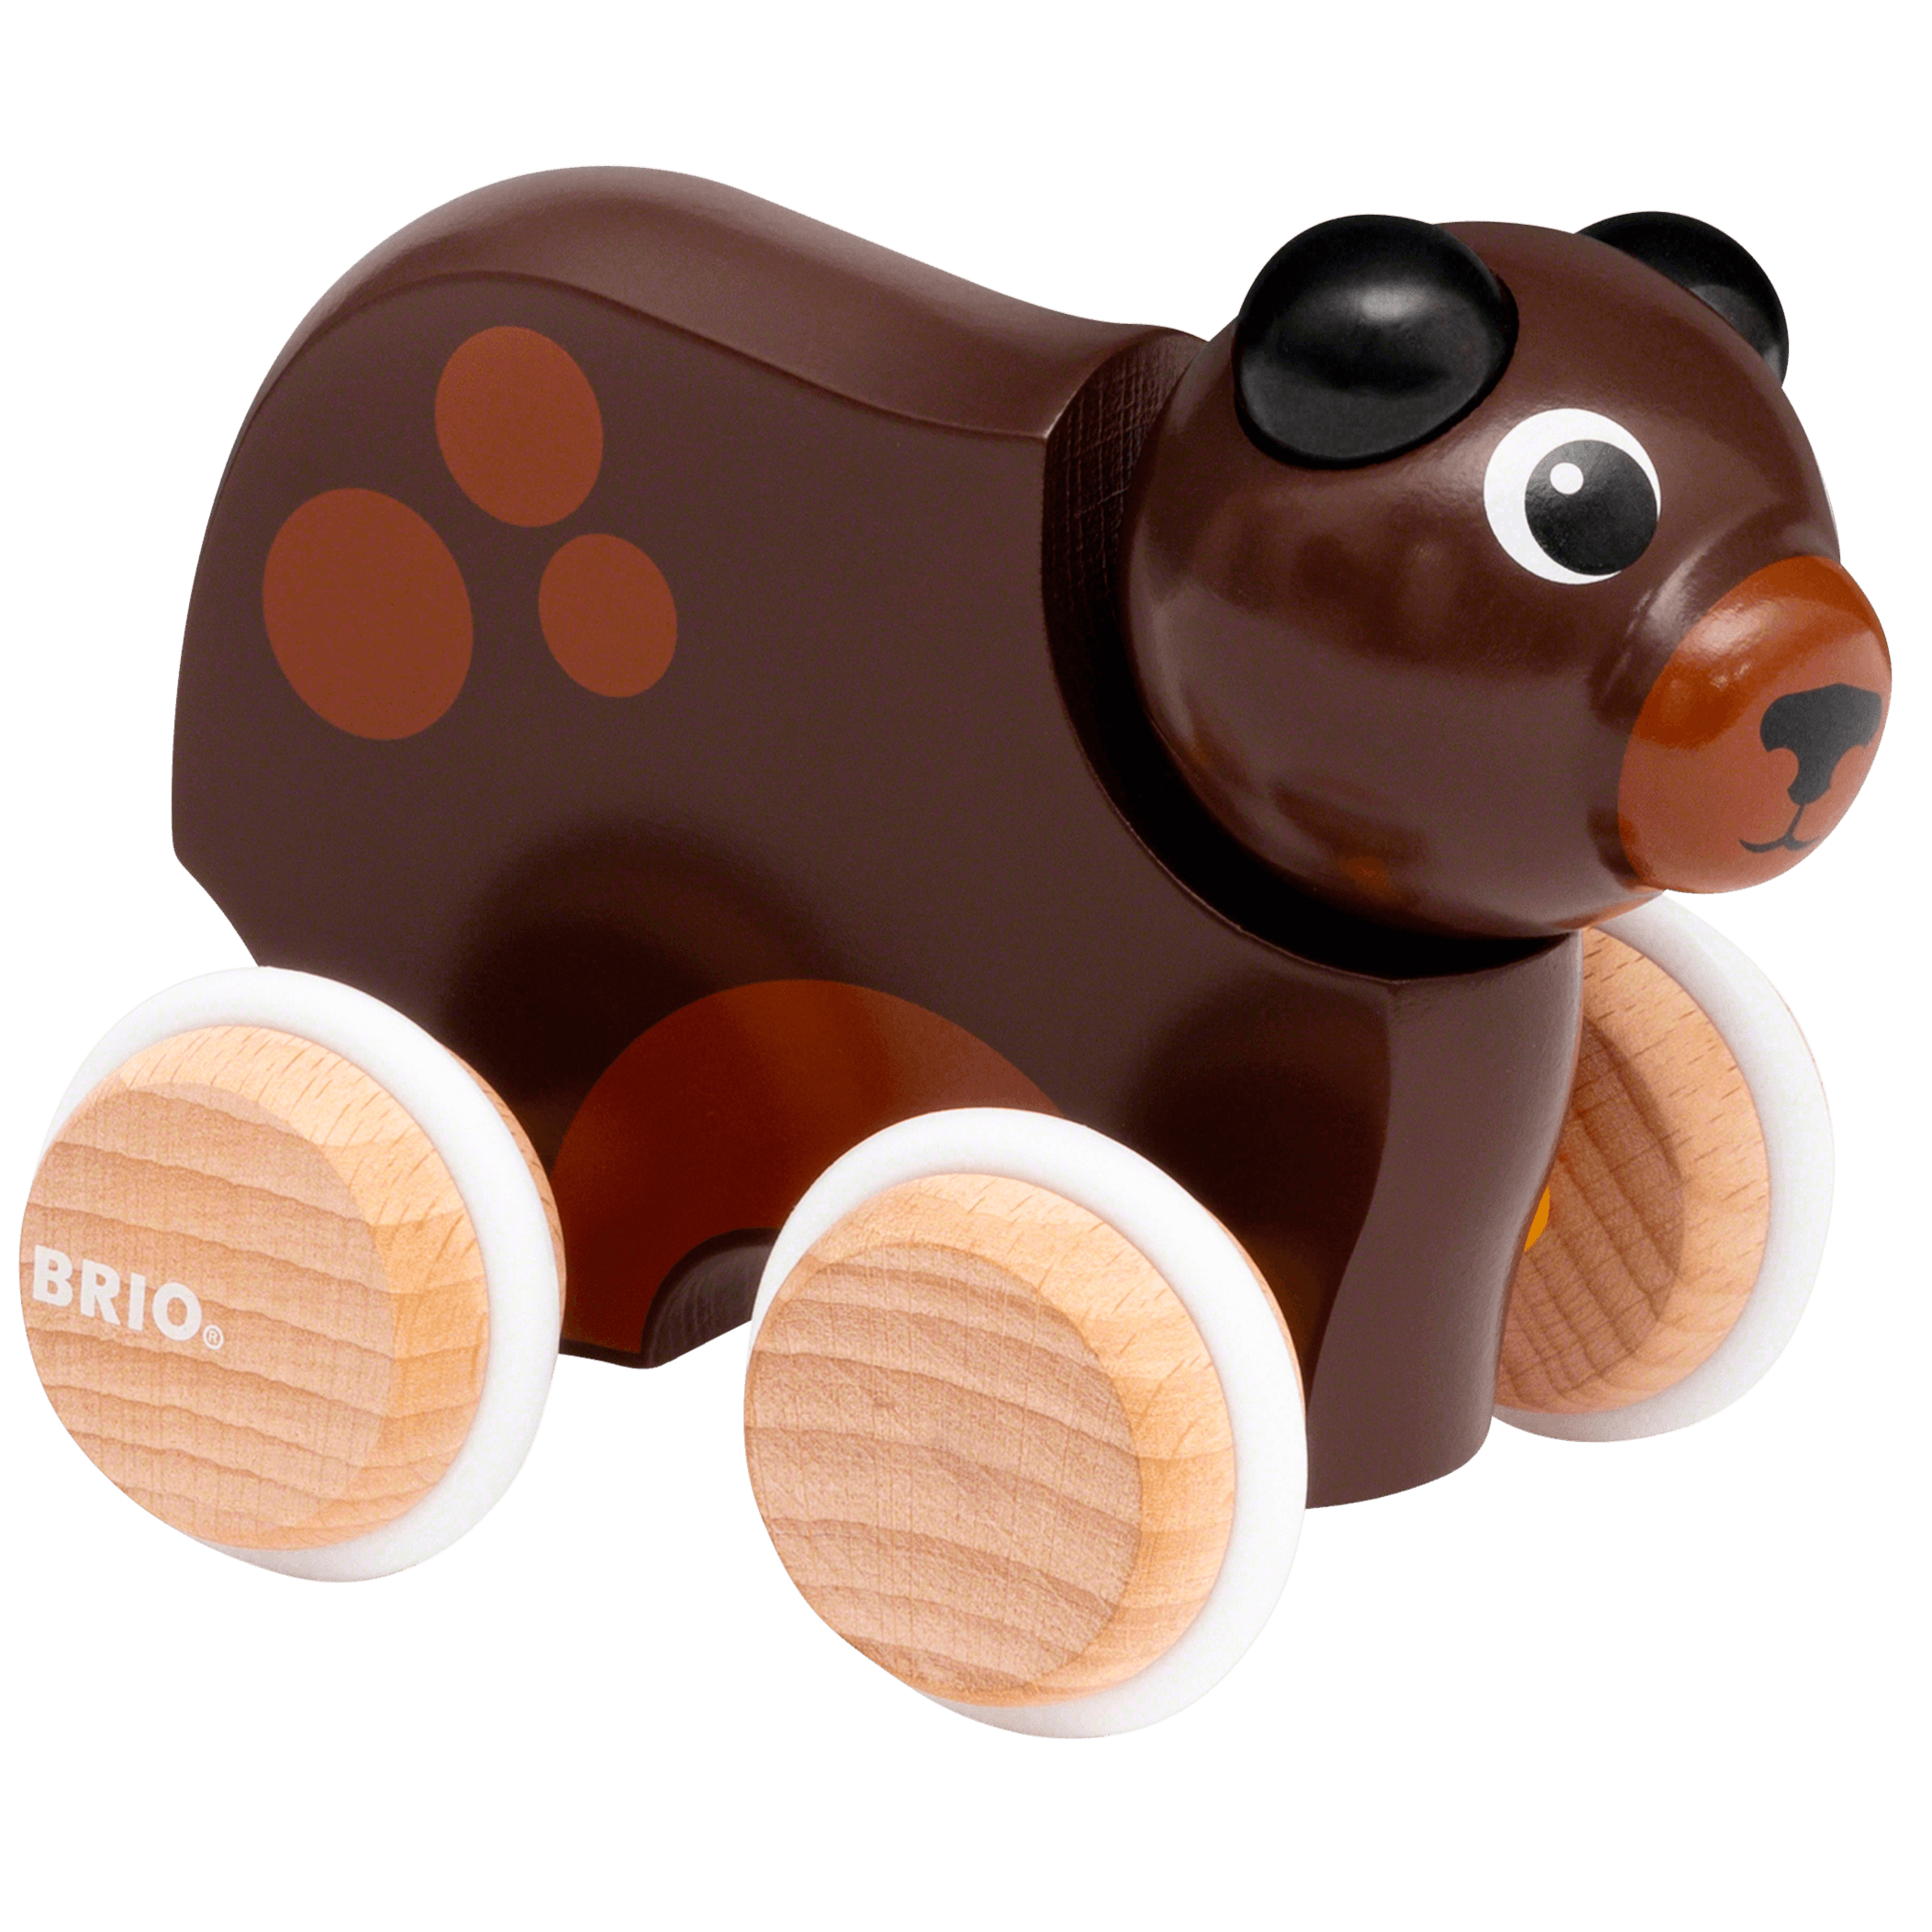 BRIO: Urso de pelúcia de push de madeira